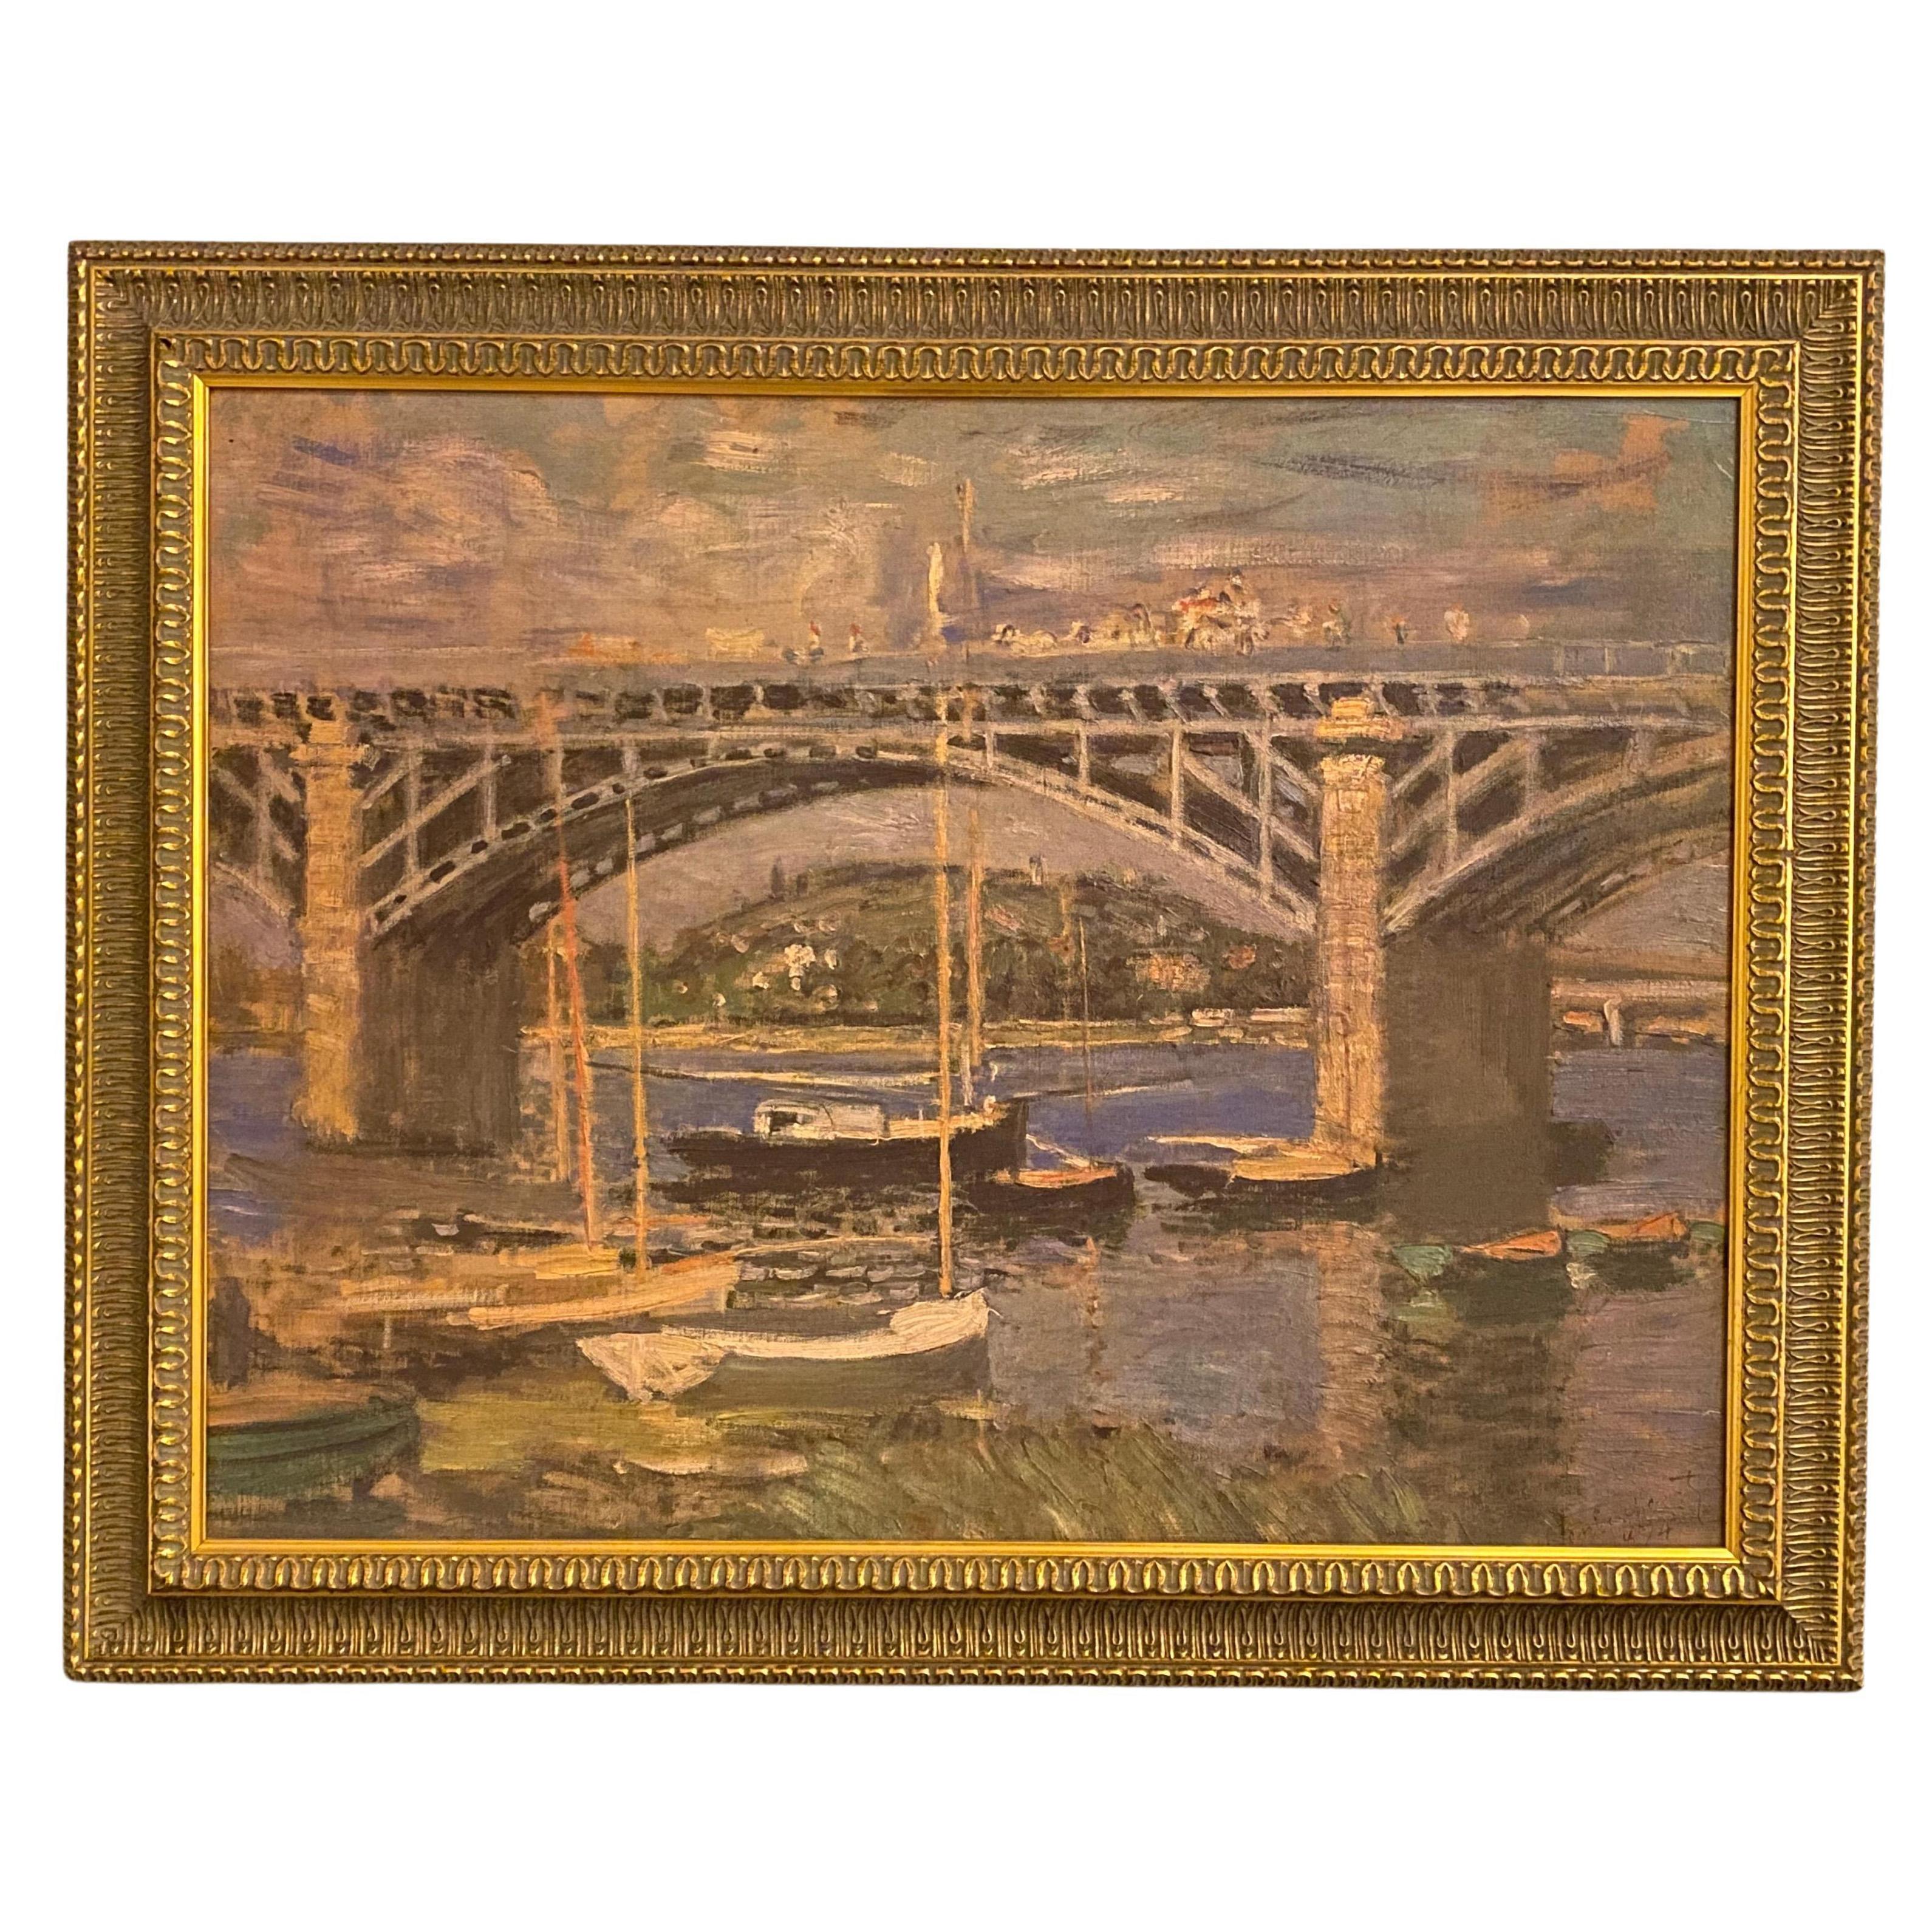 (after) Claude Monet Landscape Print - "The Bridge over the Seine Near Argenteuil" Oil Reproduction after Claude Monet